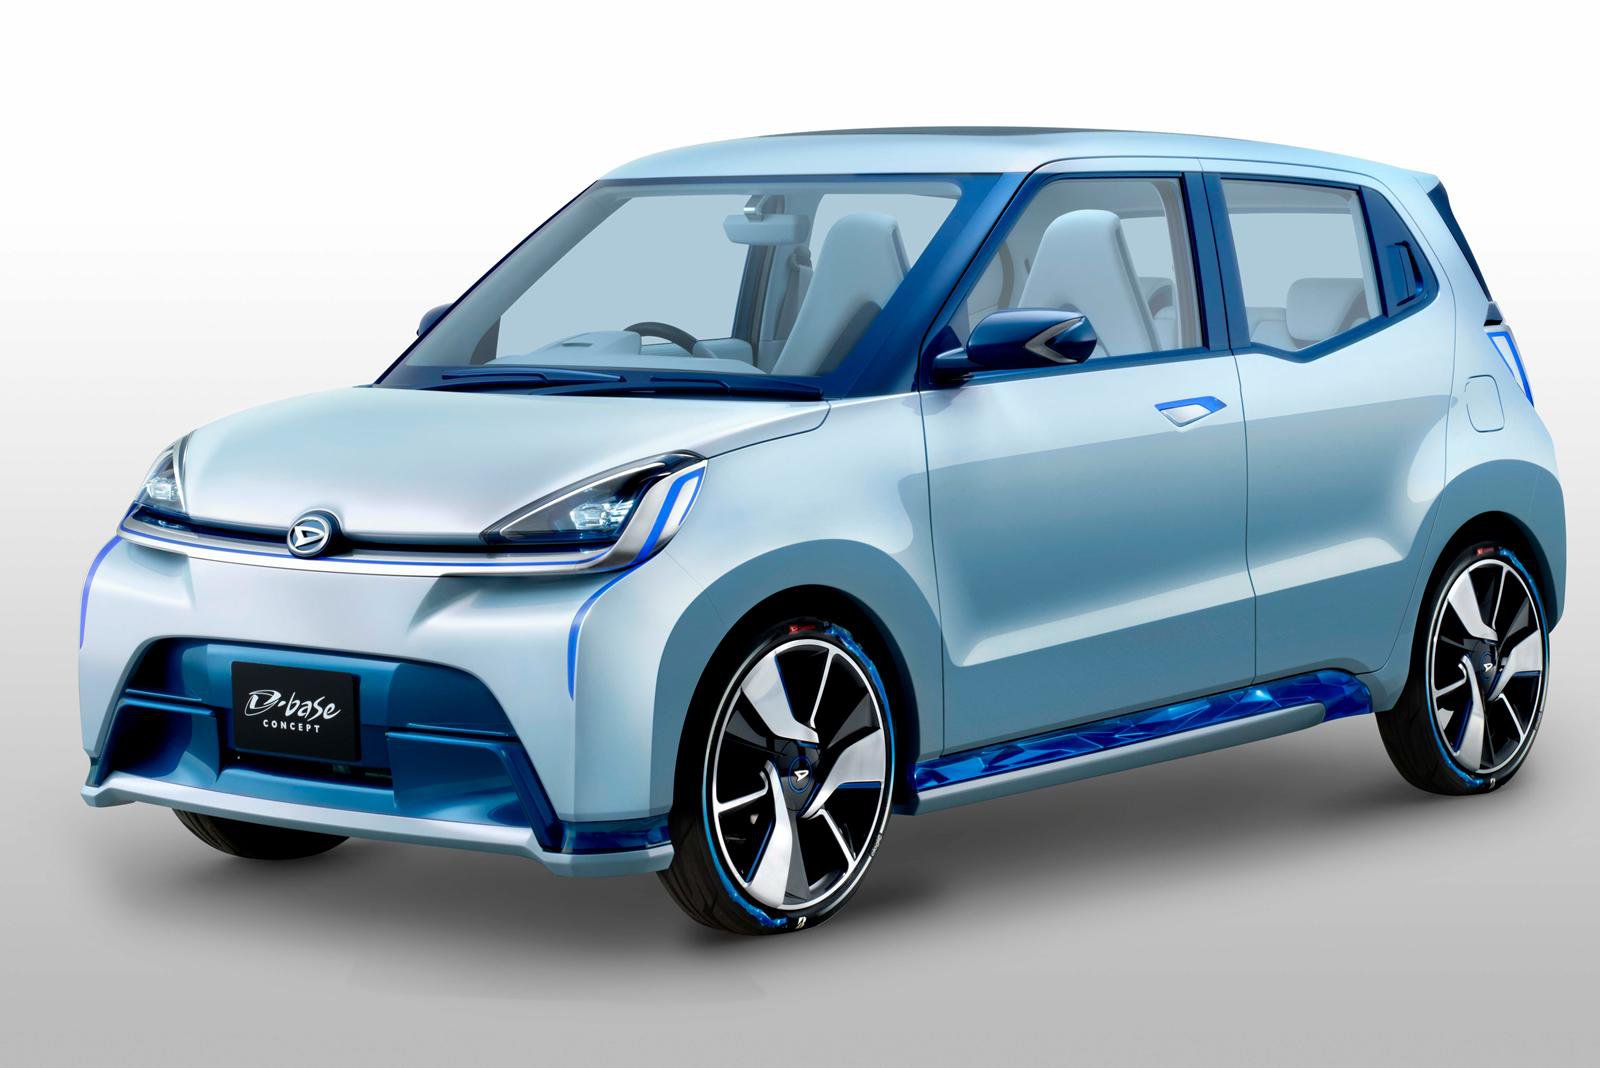 D-base je reálně vyhlížející koncept nové generace kei cars od Daihatsu. K jeho pohonu slouží, jak jinak, 0.66litrový tříválec. Spotřeba je díky regenerativnímu brzdění, bezestupňovému automatu i nízké hmotnosti jen 3 l/100 km.